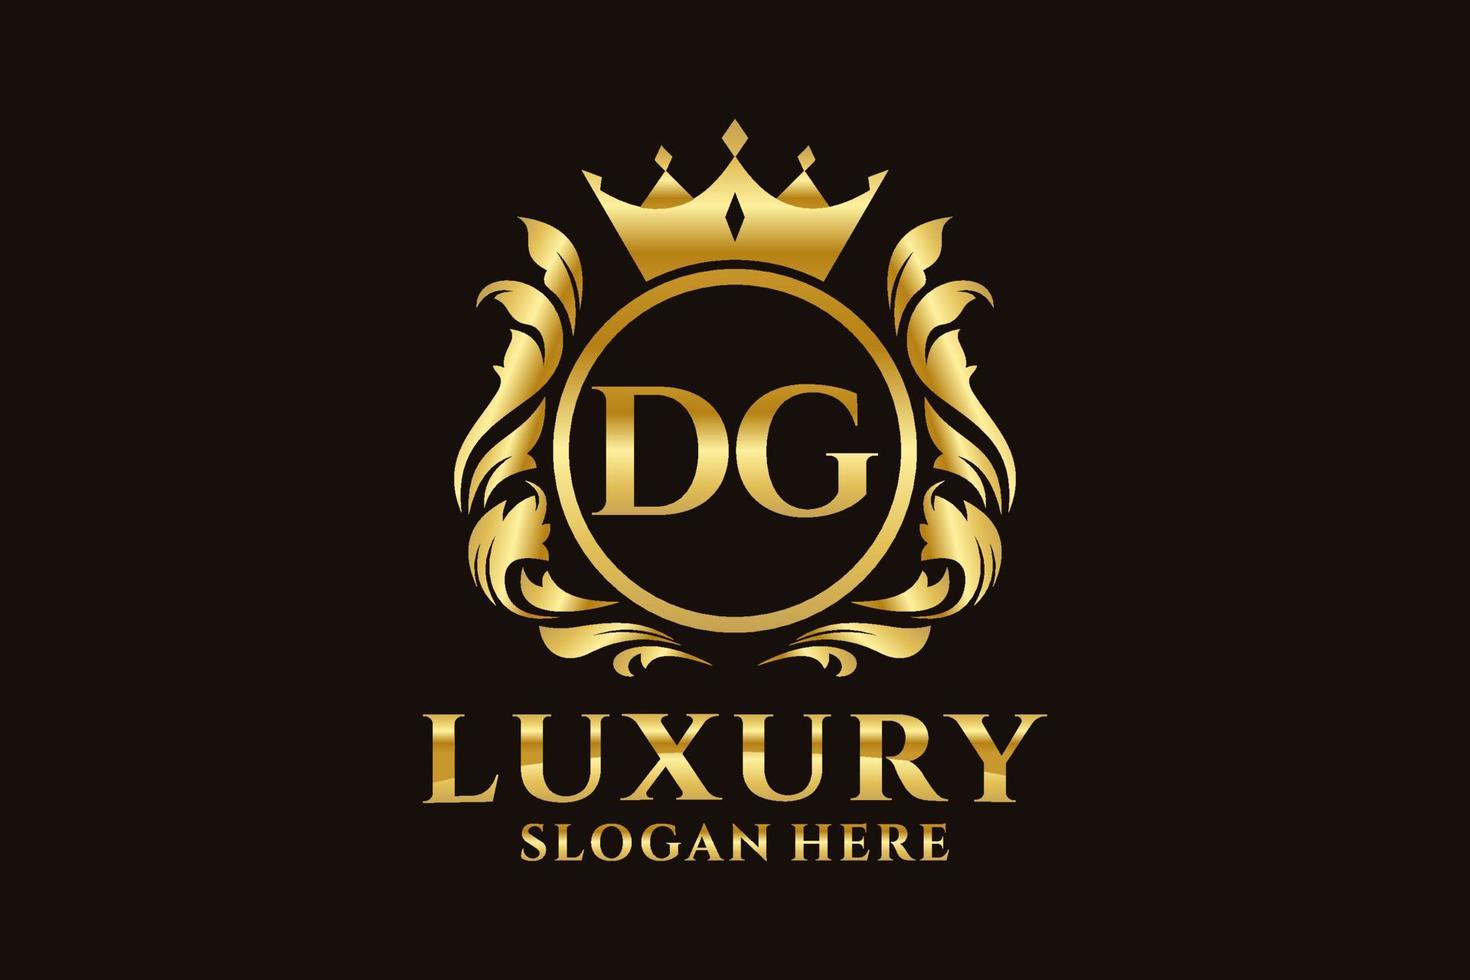 Royal Luxury Logo-Vorlage mit anfänglichem dg-Buchstaben in Vektorgrafiken für luxuriöse Branding-Projekte und andere Vektorillustrationen. vektor